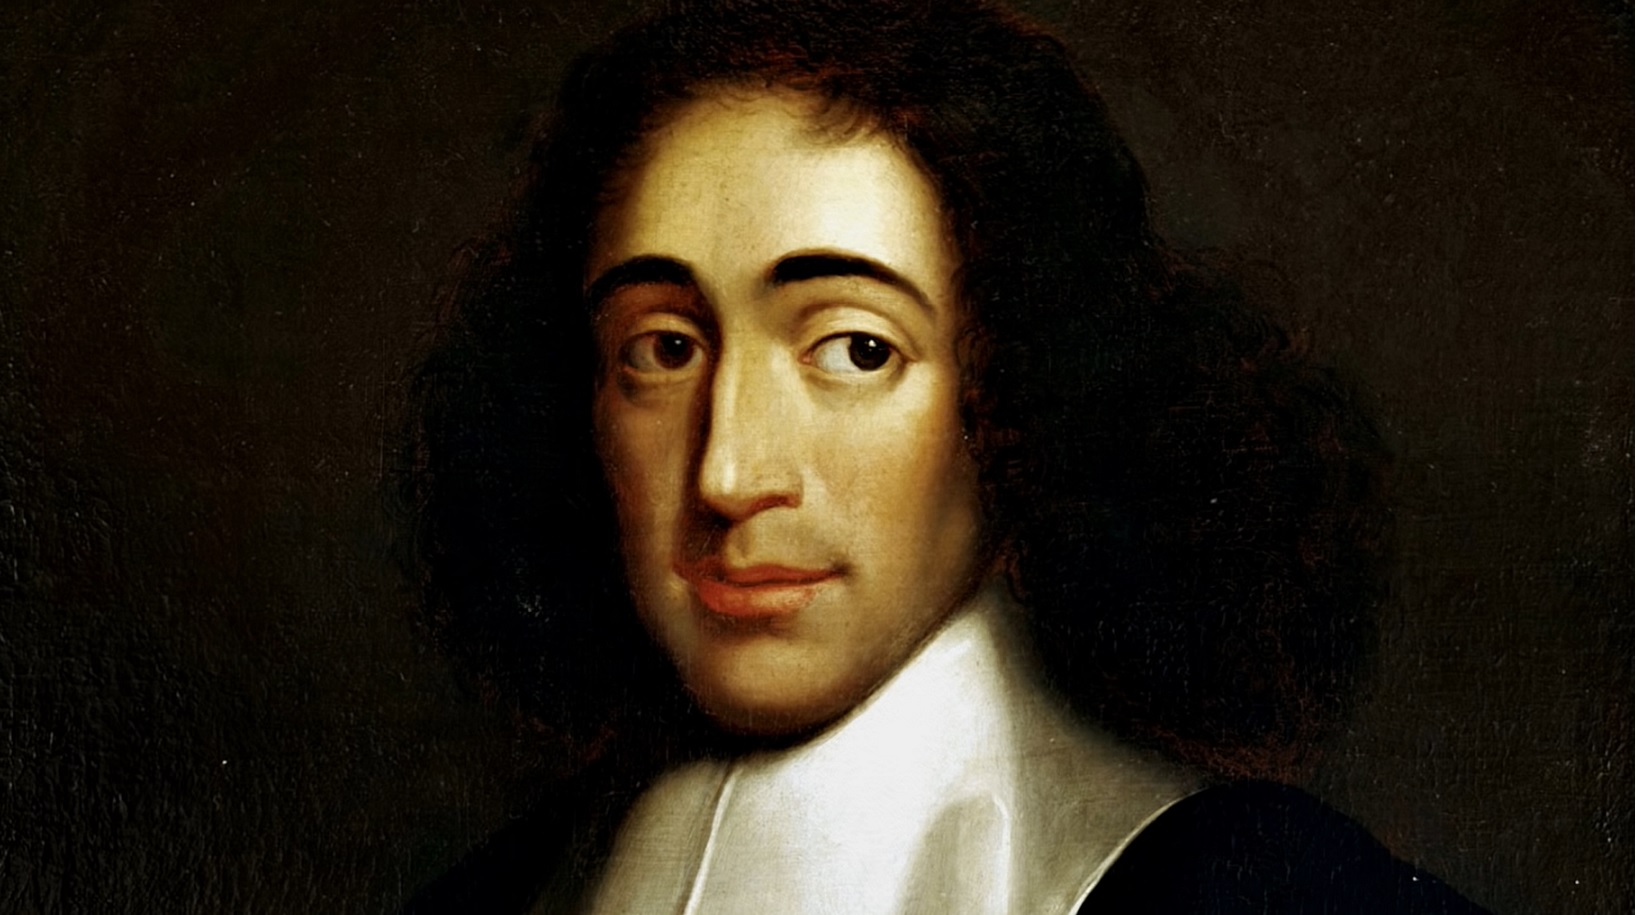 Az állam természetes működése a demokrácia  – meghalt Alexandre Matheron, az egyik legnagyobb Spinoza-kutató